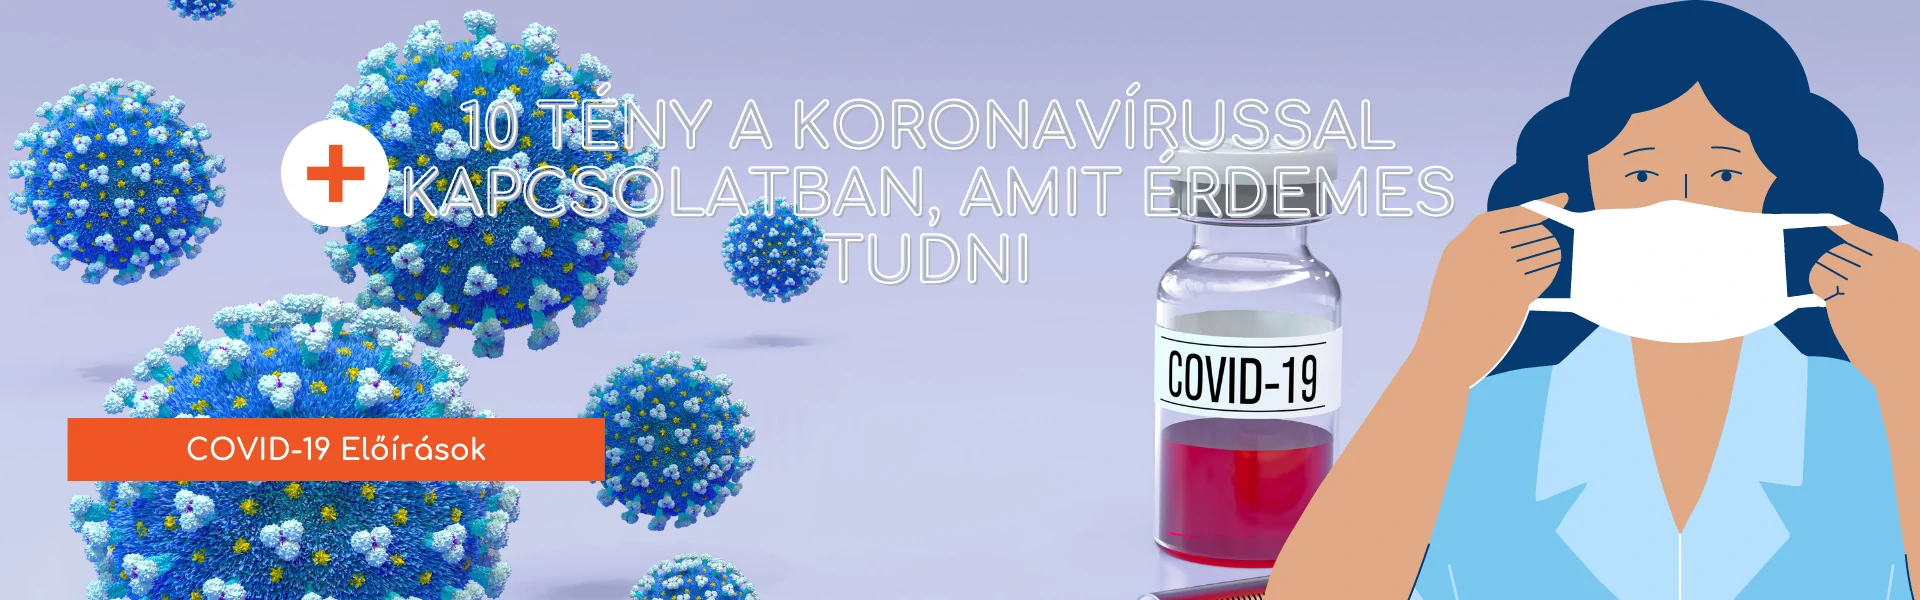 10 tény a koronavírussal kapcsolatban, amit érdemes tudni